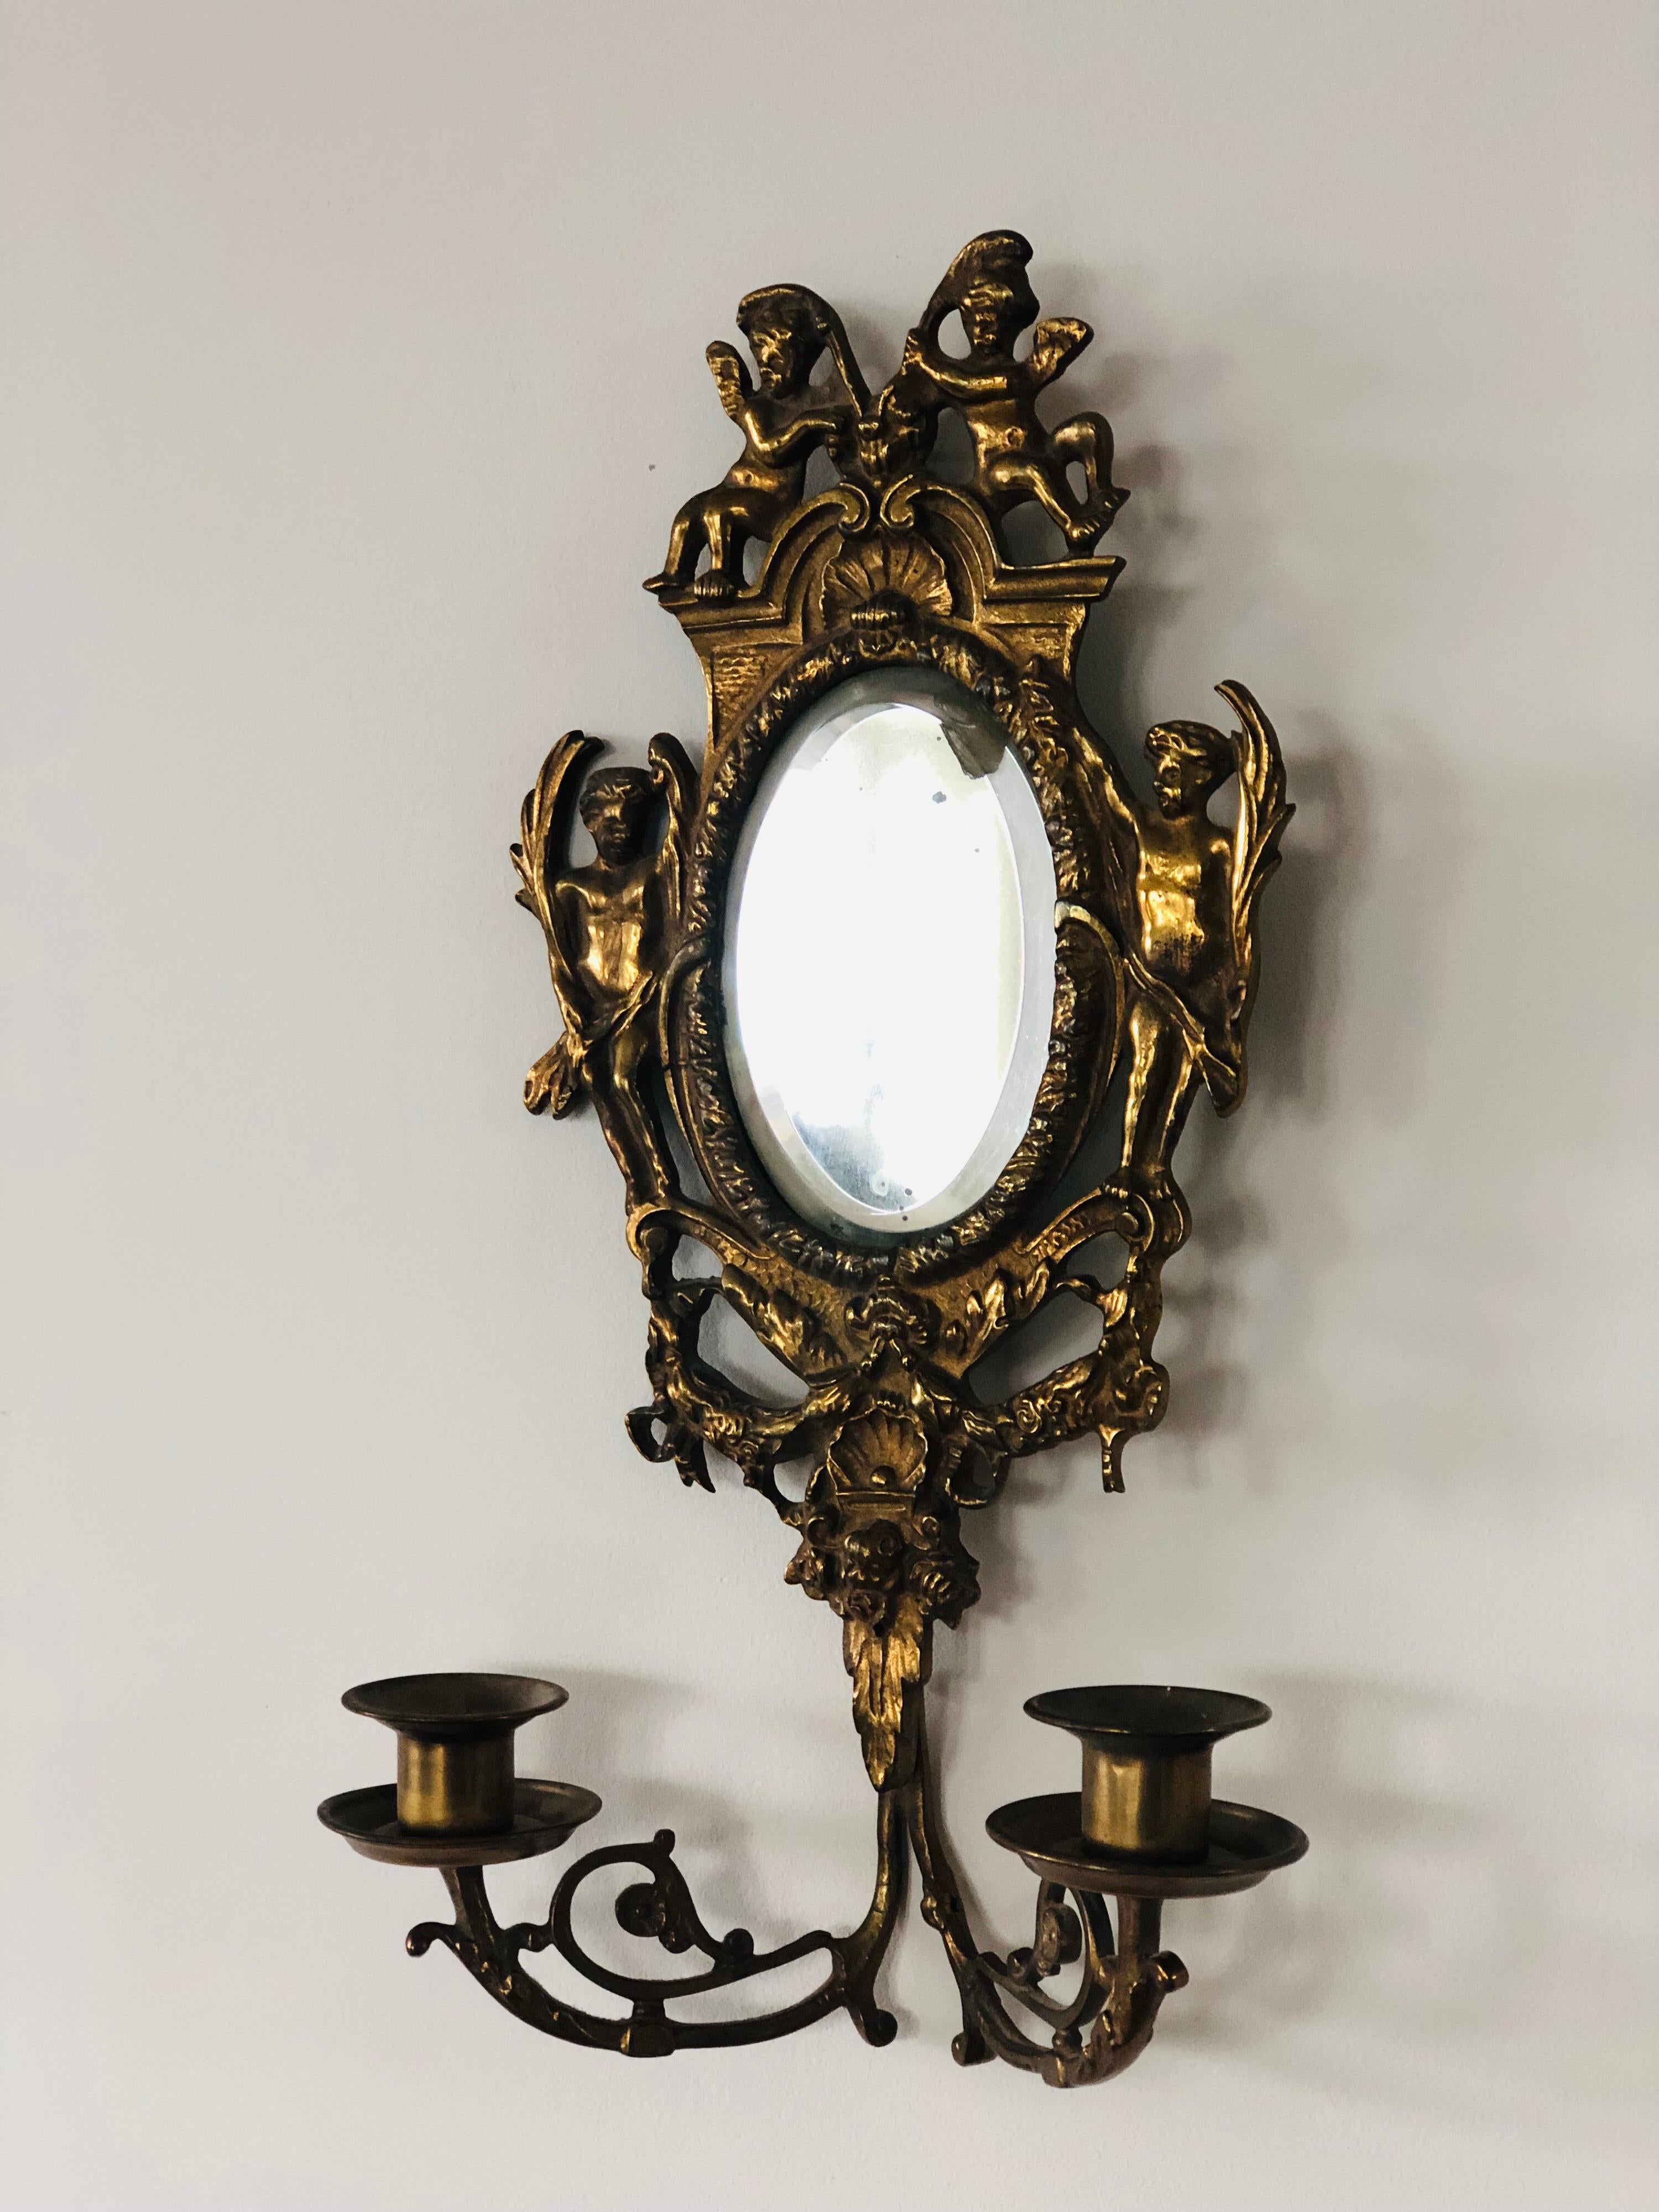 paar blattvergoldete, zweiflammige Wandleuchter aus dem 19. Jahrhundert, mit originalem Spiegelglas. 
Die Wandleuchten können verkabelt werden.
Frankreich, um 1880.